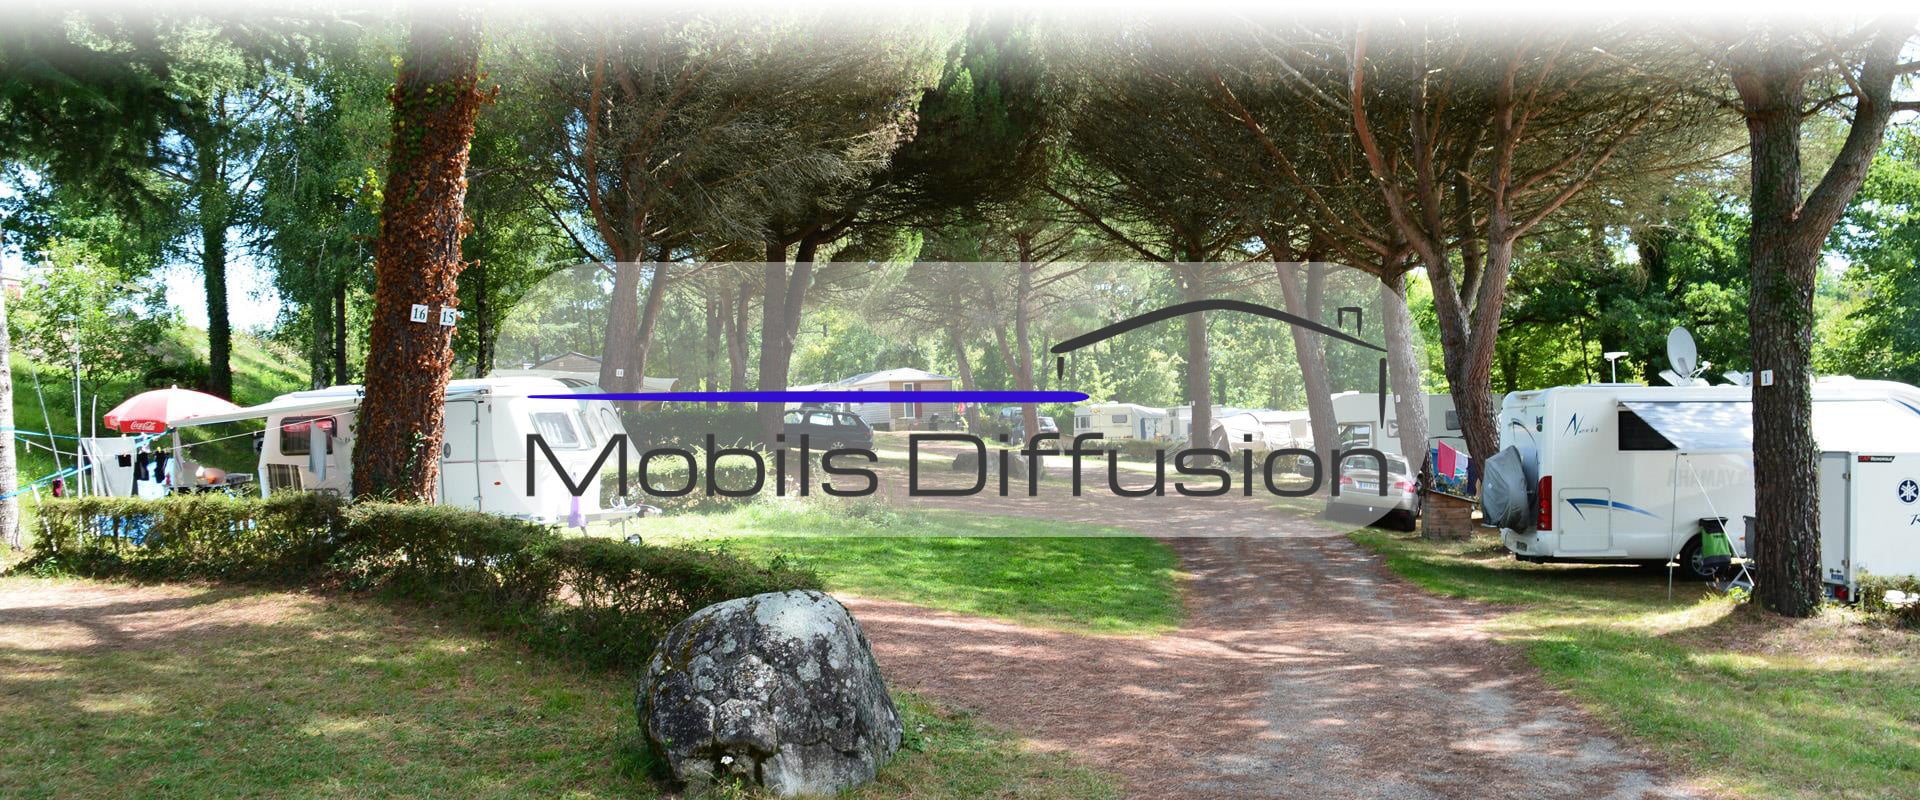 Mobils Diffusion - Terrain pour mobil-home au camping en Occitanie dans l’Aveyron